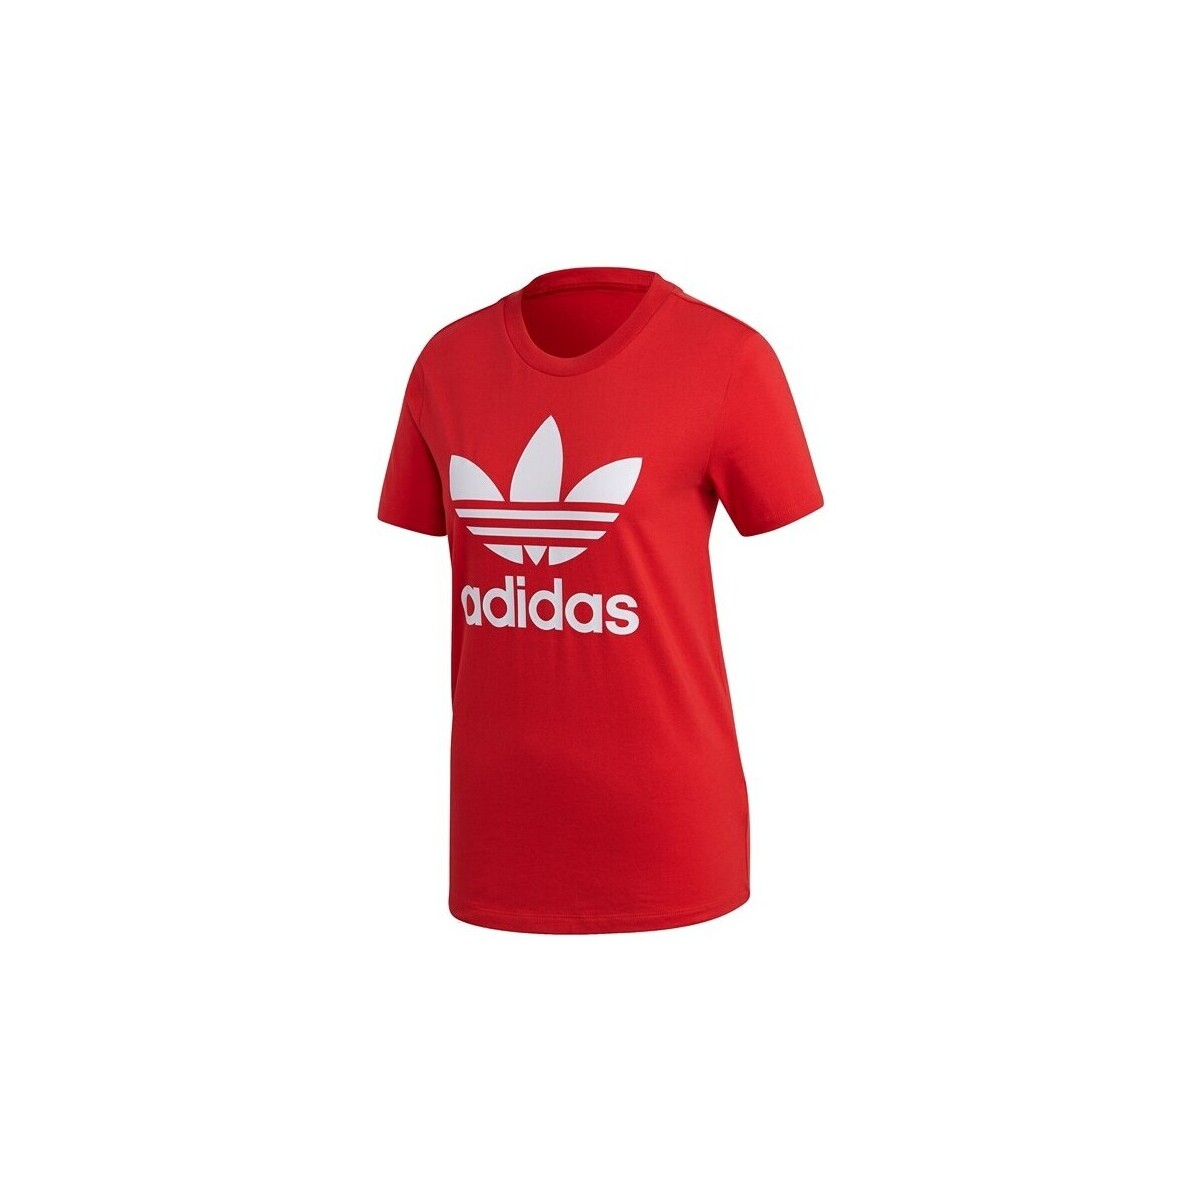 Vêtements Femme T-shirts manches courtes adidas Originals FM3302 Rouge